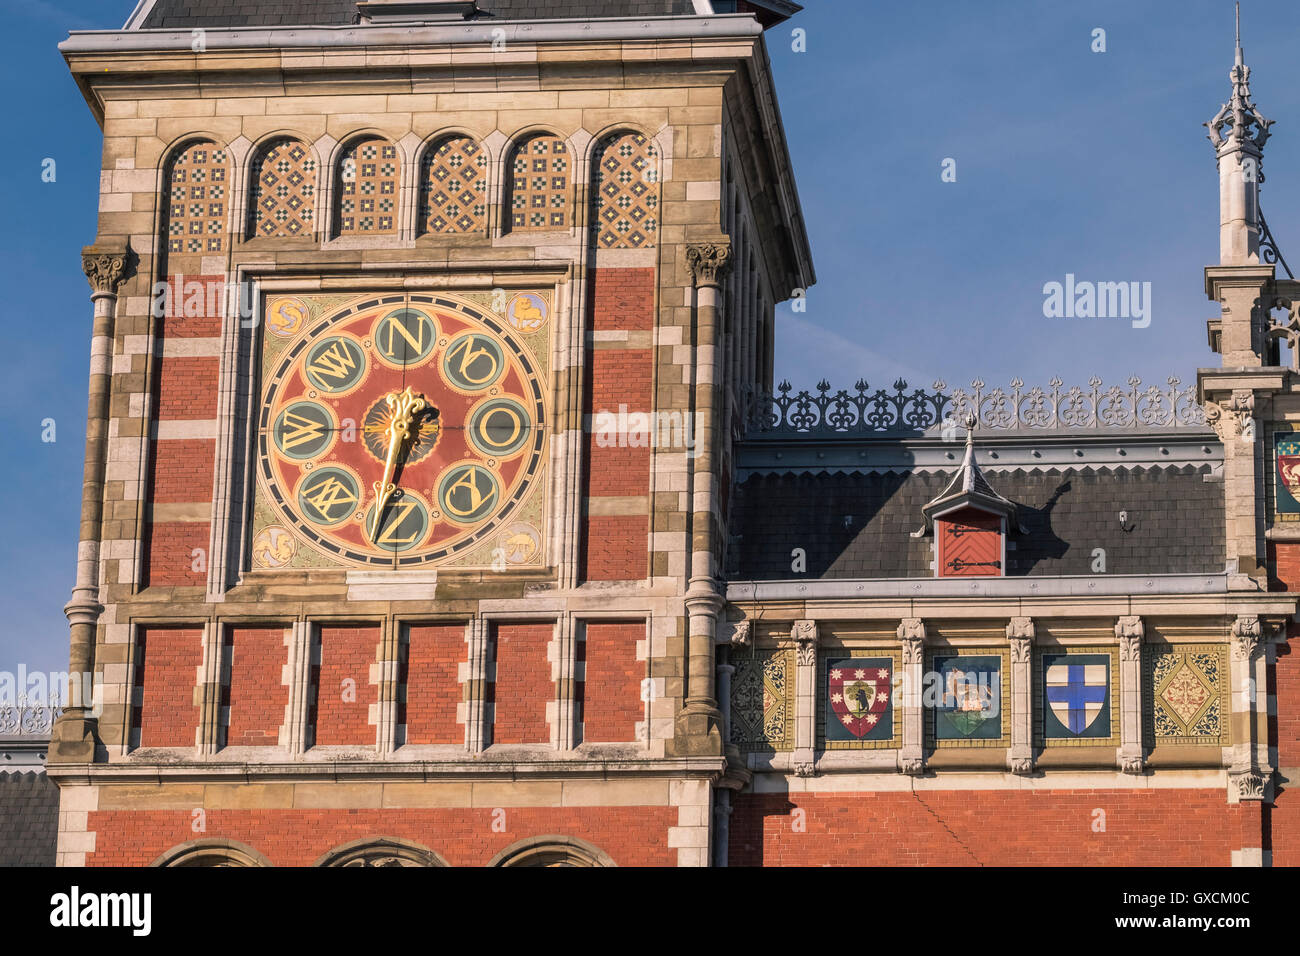 Girouette et les détails architecturaux à l'extérieur de la Gare Centrale d'Amsterdam, Amsterdam, Pays-Bas Banque D'Images